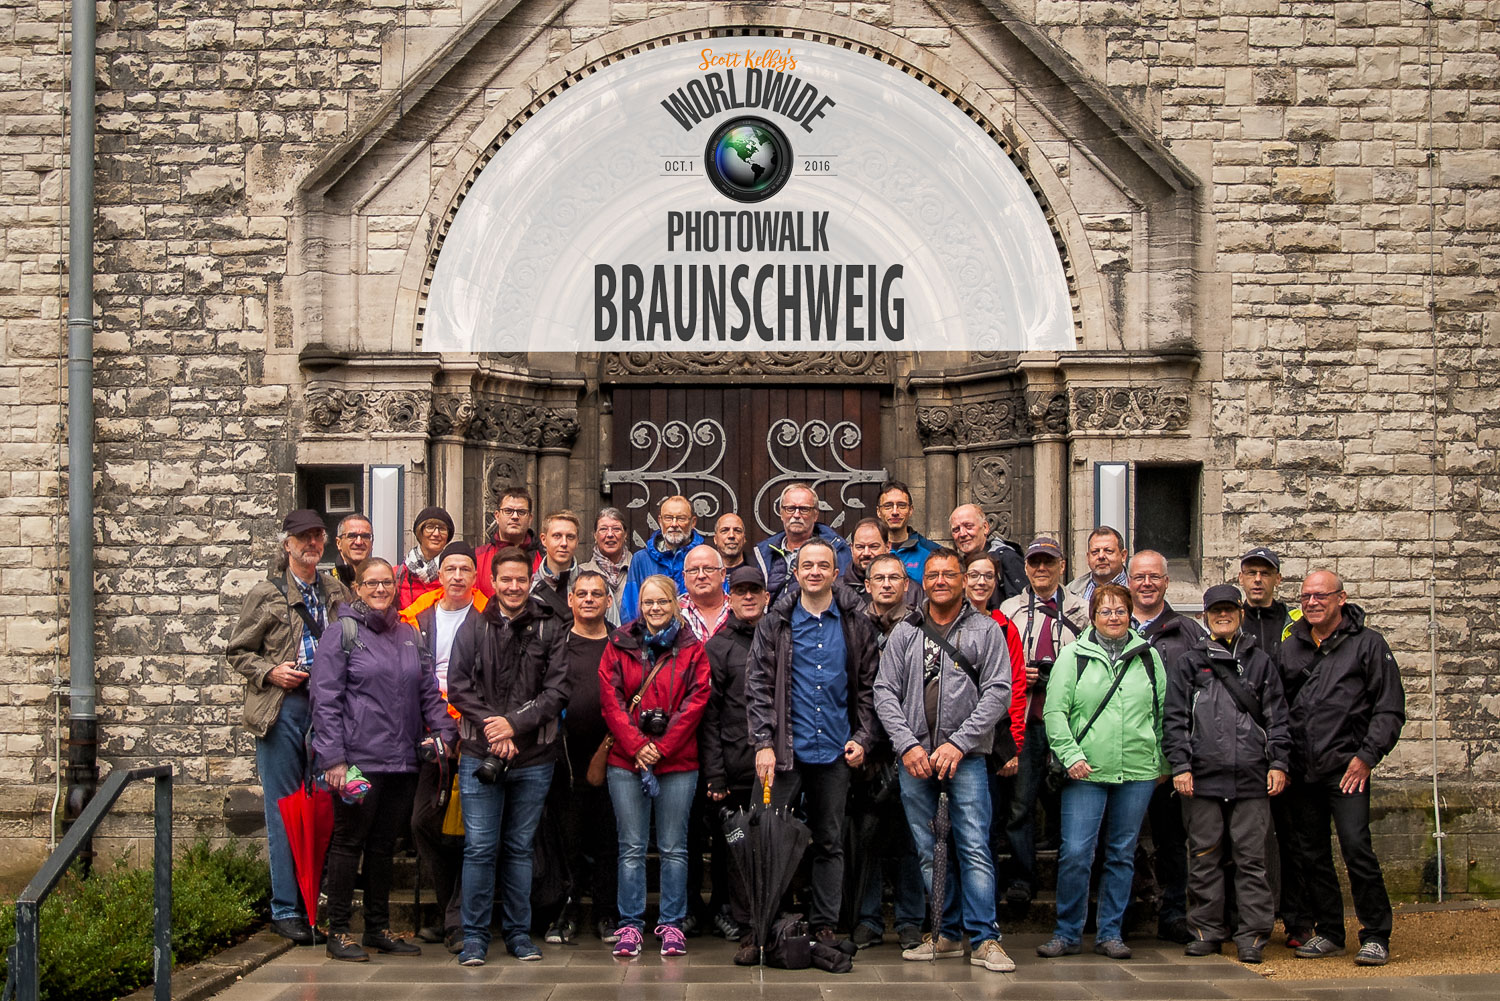 Worldwide Photo Walk 2016 Braunschweig Gruppenfoto